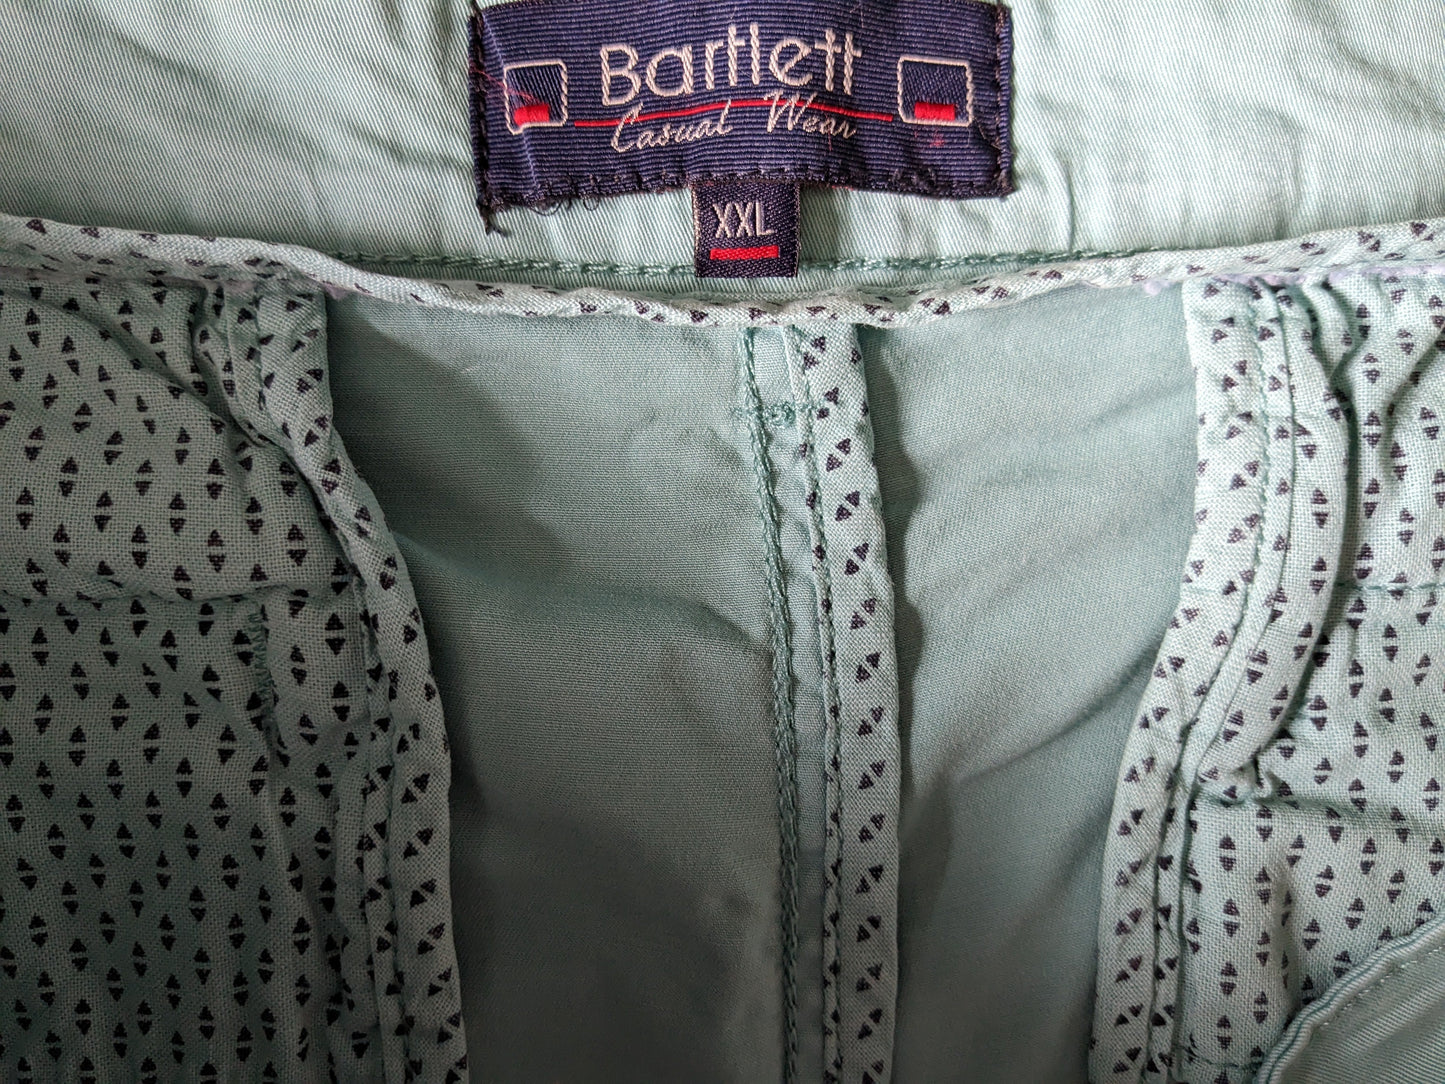 Bartlett Shorts. Farbig grün. Größe xxl / 2xl. Strecken.